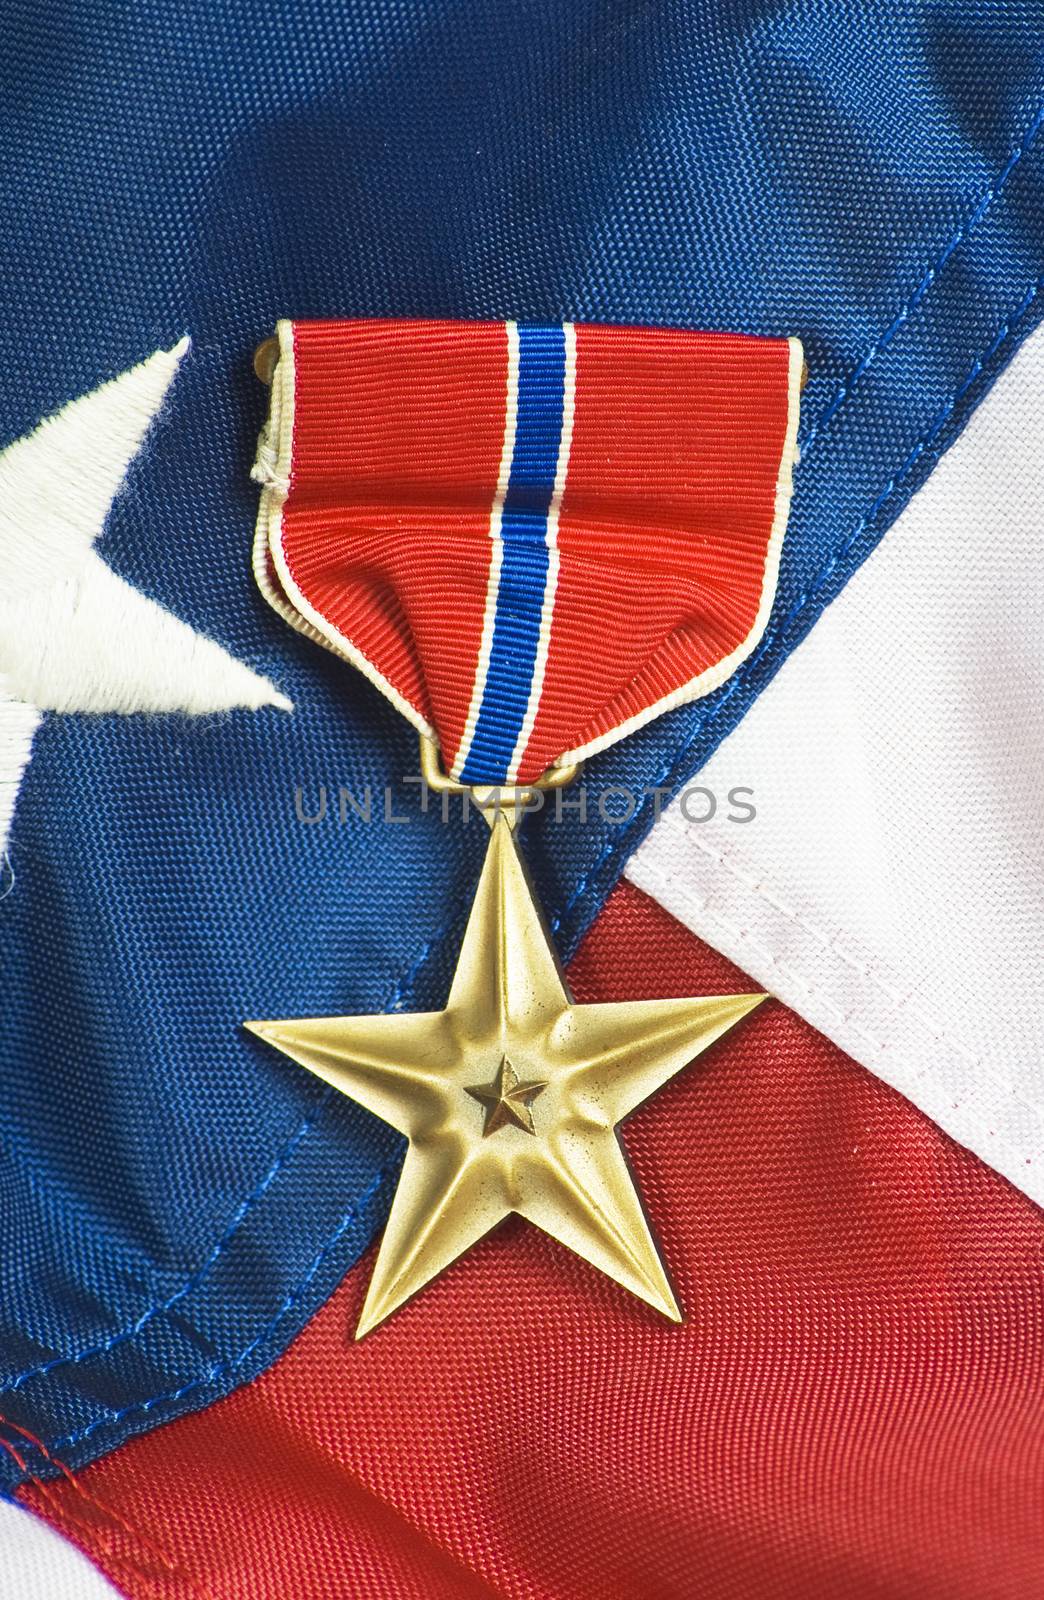 Bronze star, awarded for valor in combat.